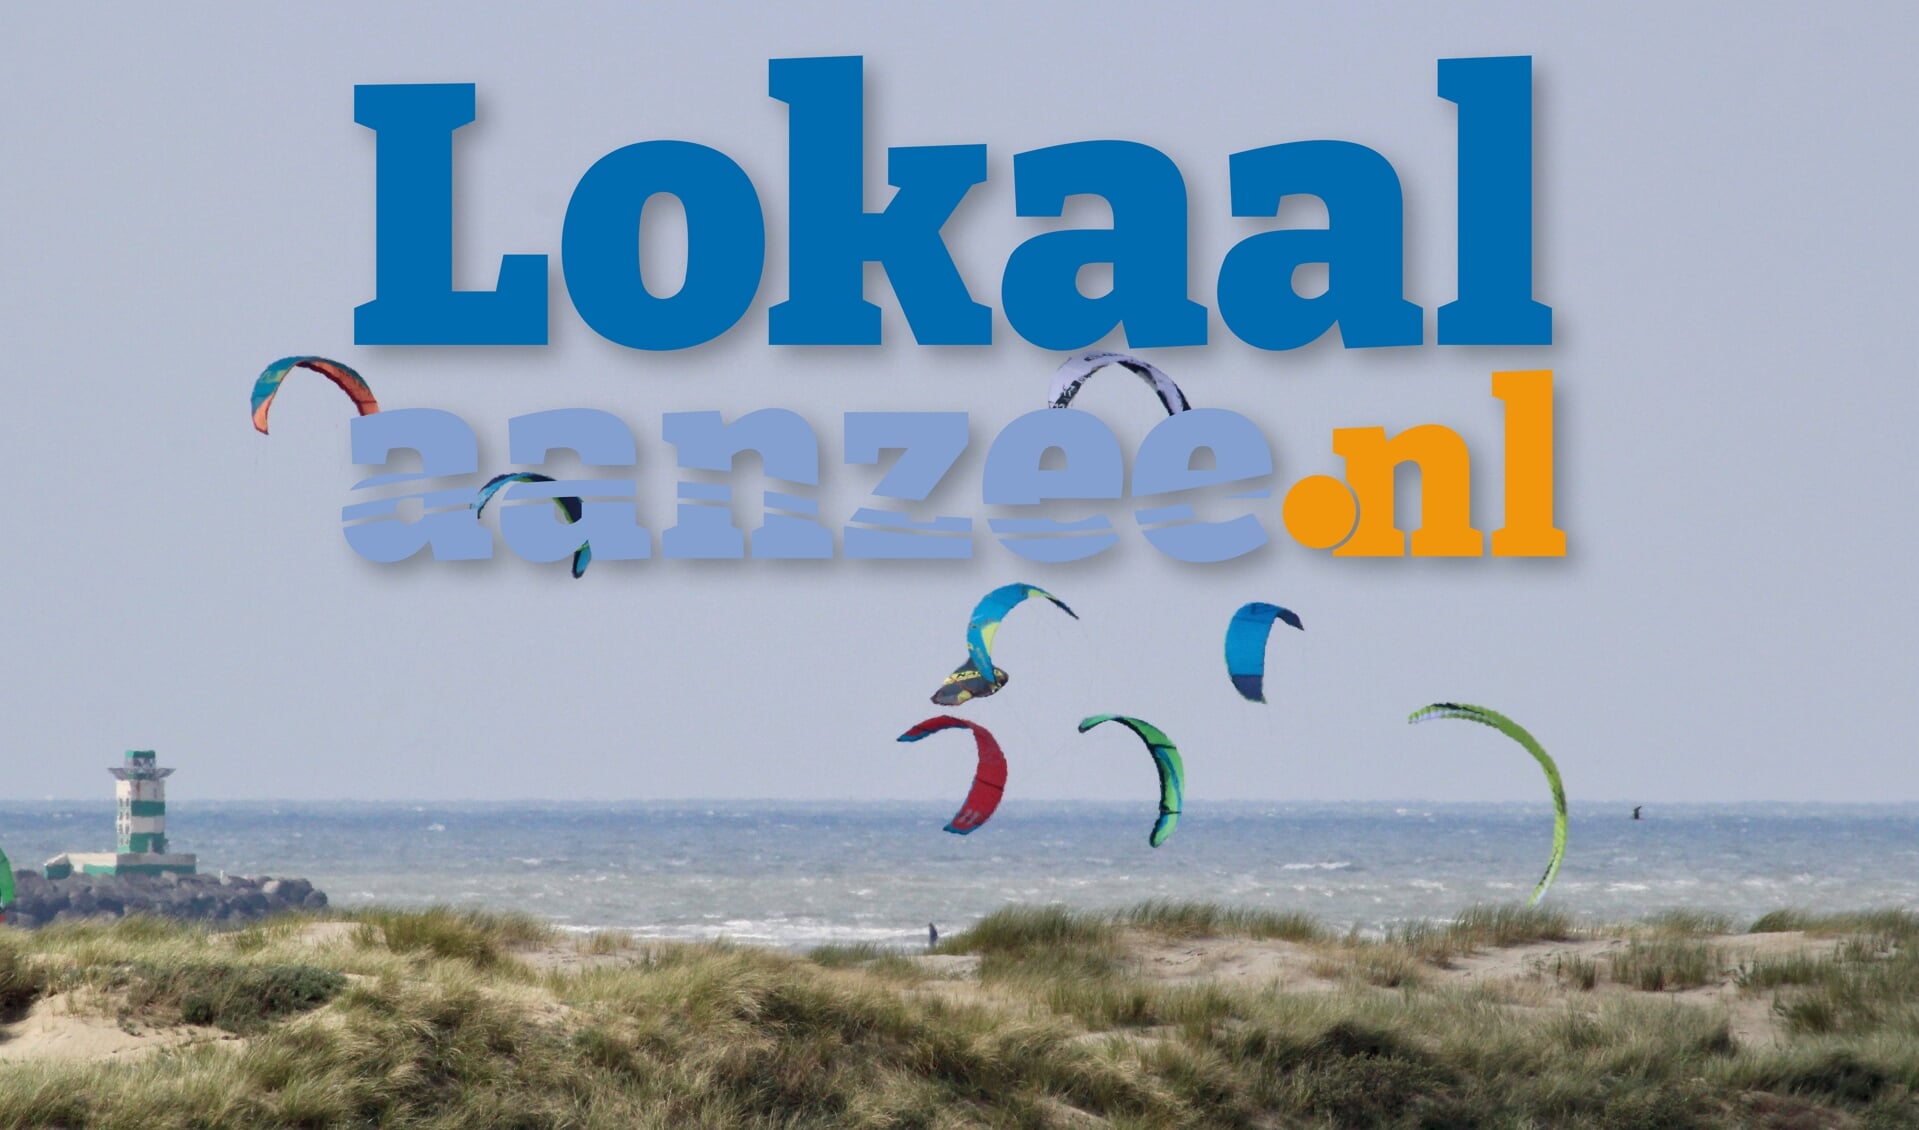 Lokaalaanzee.nl is er voor de kustbewoner, maar ook voor iedereen die in de streek van de kust woont.